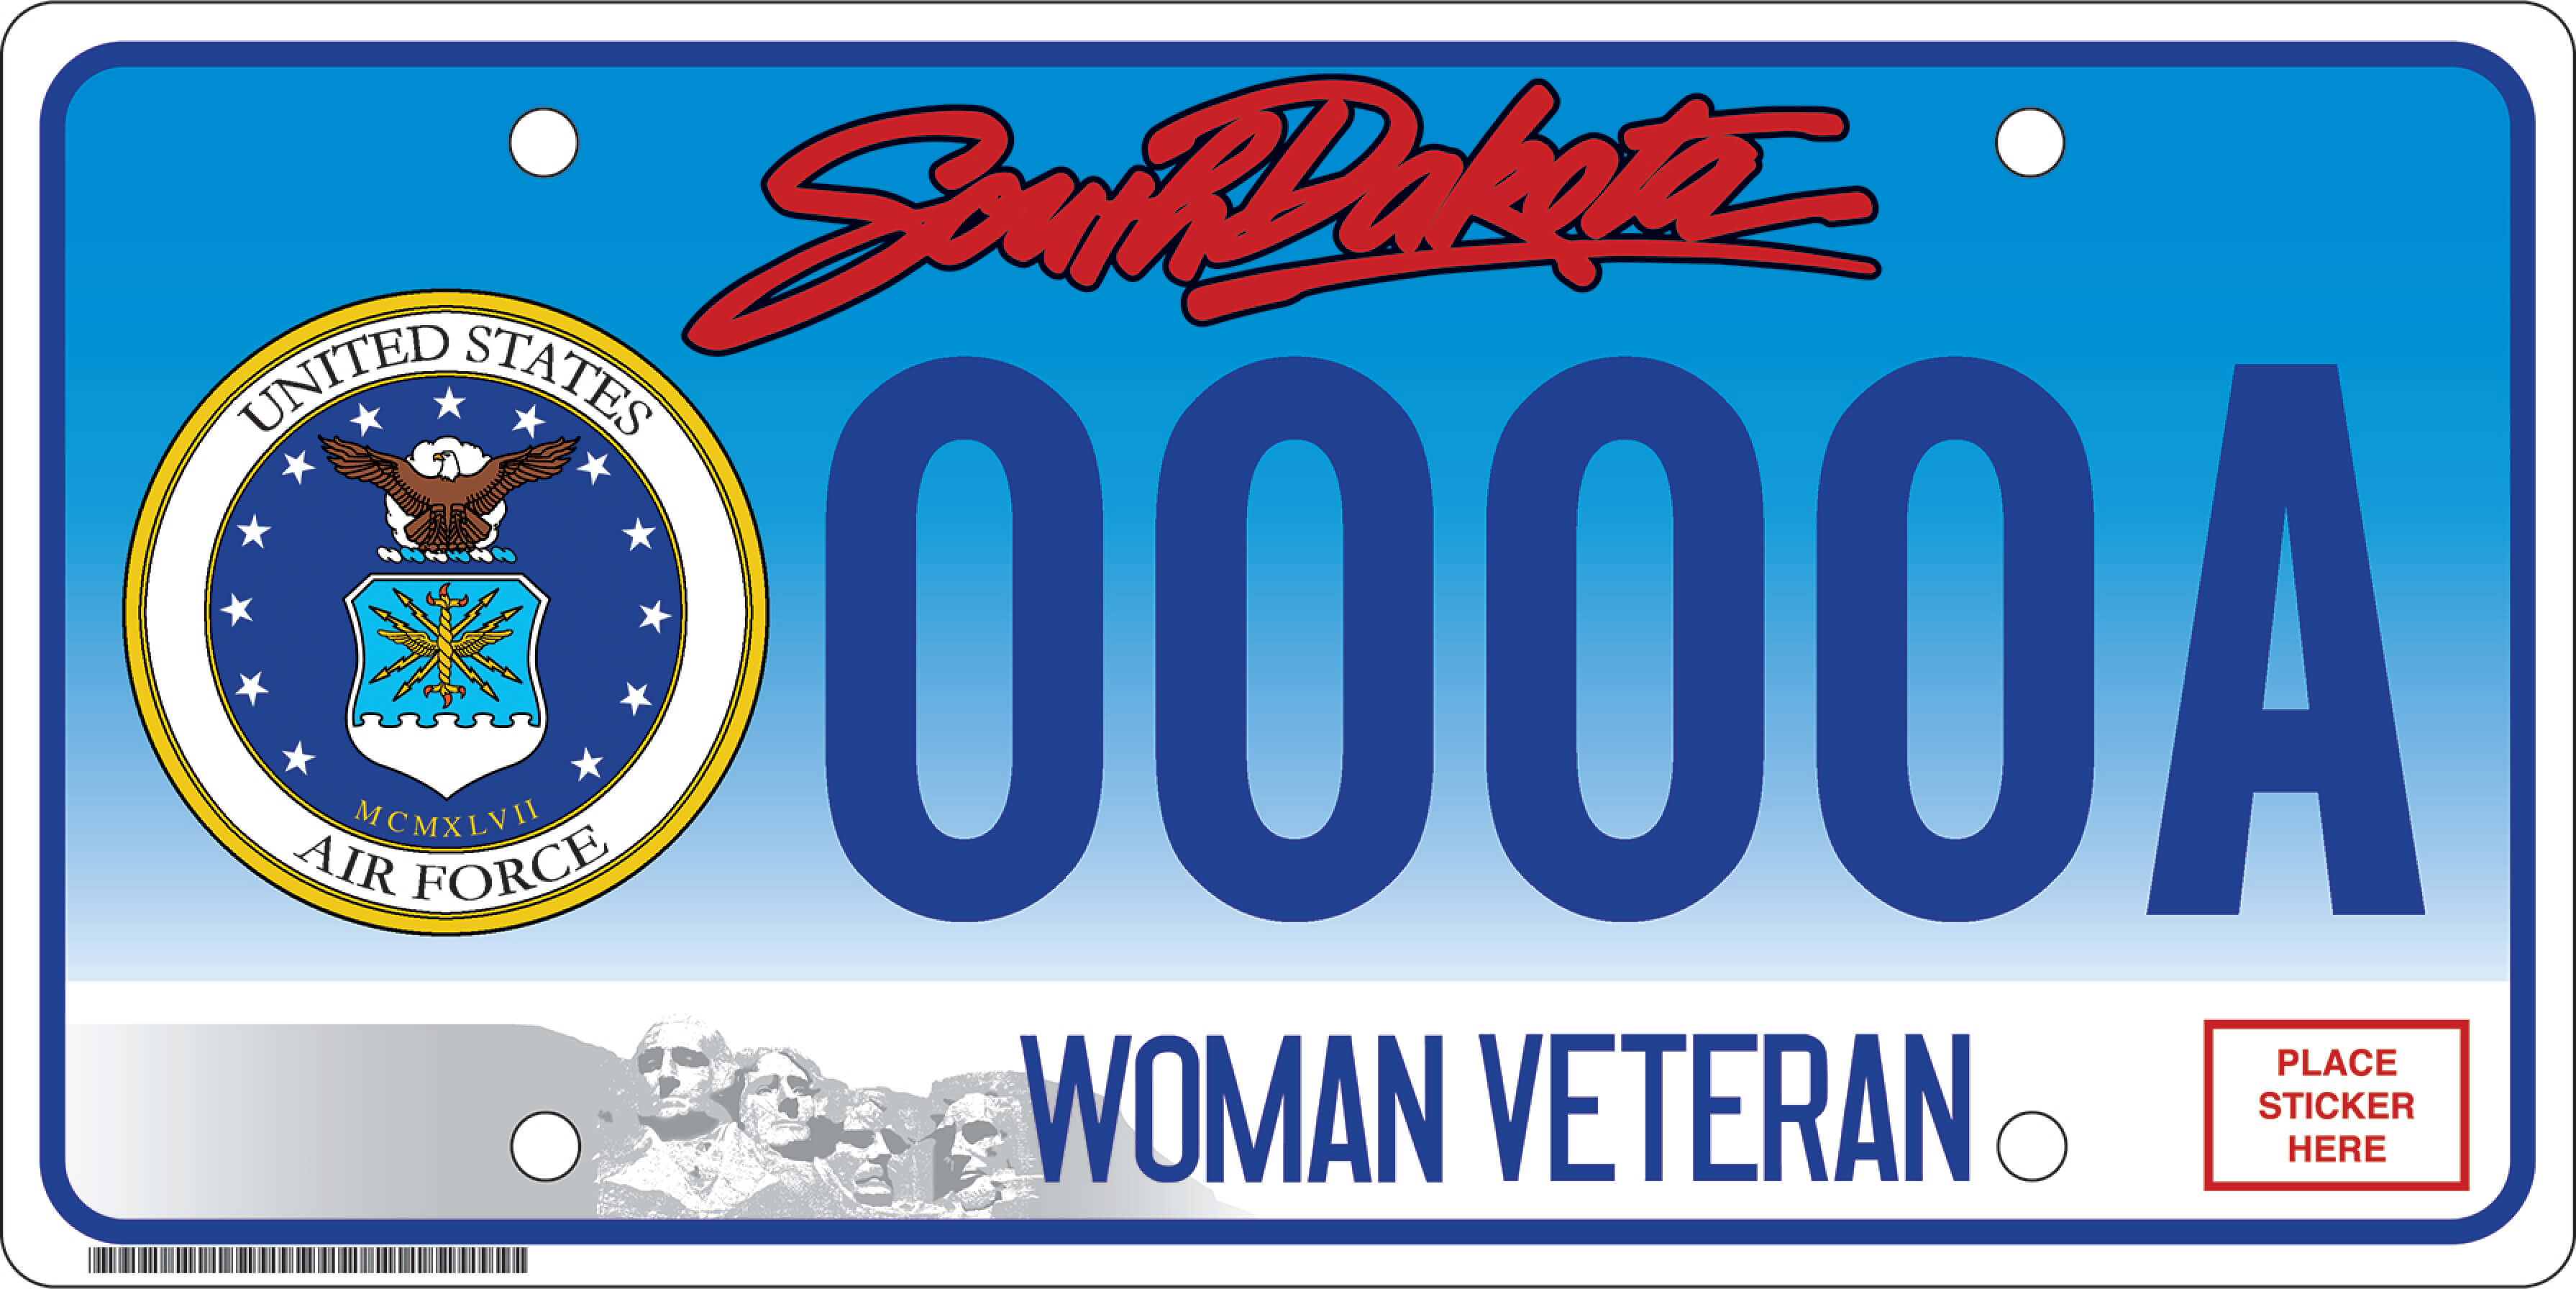 Woman Veteran Air Force Plate